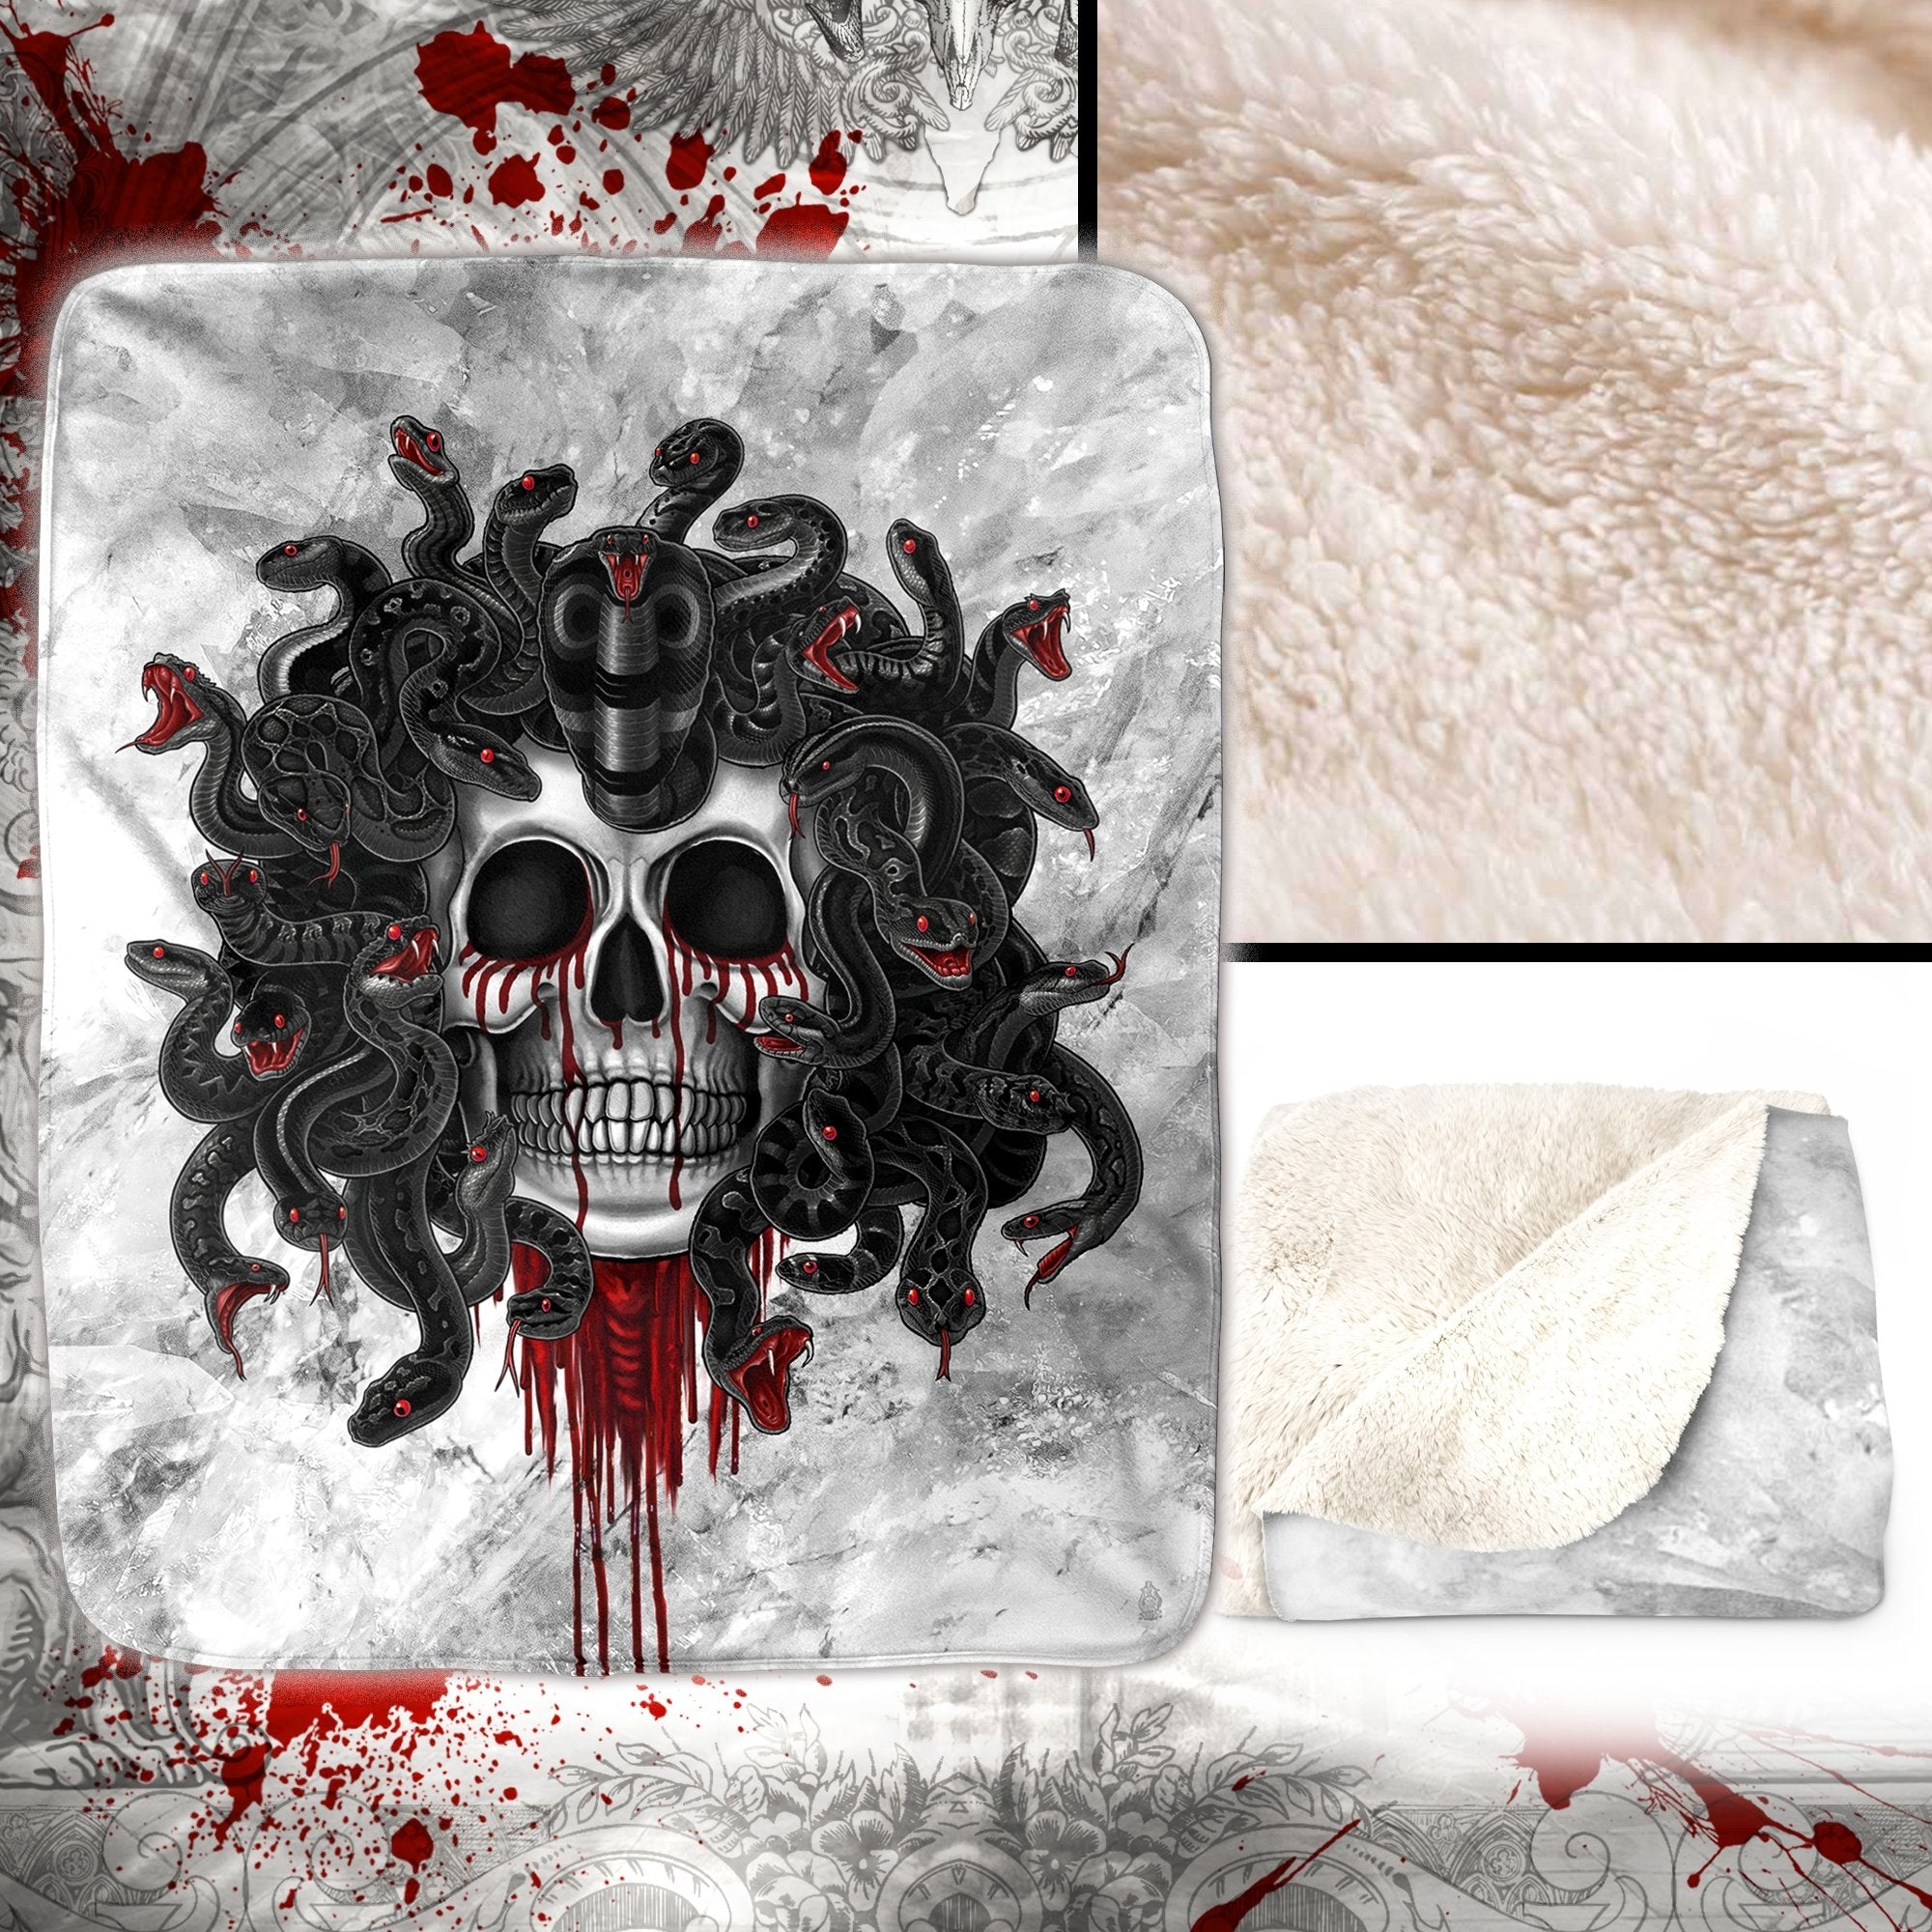 Skull Throw Fleece Blanket, White Goth Home Decor, Alternative Art Gift - Medusa, Black Snakes - Abysm Internal